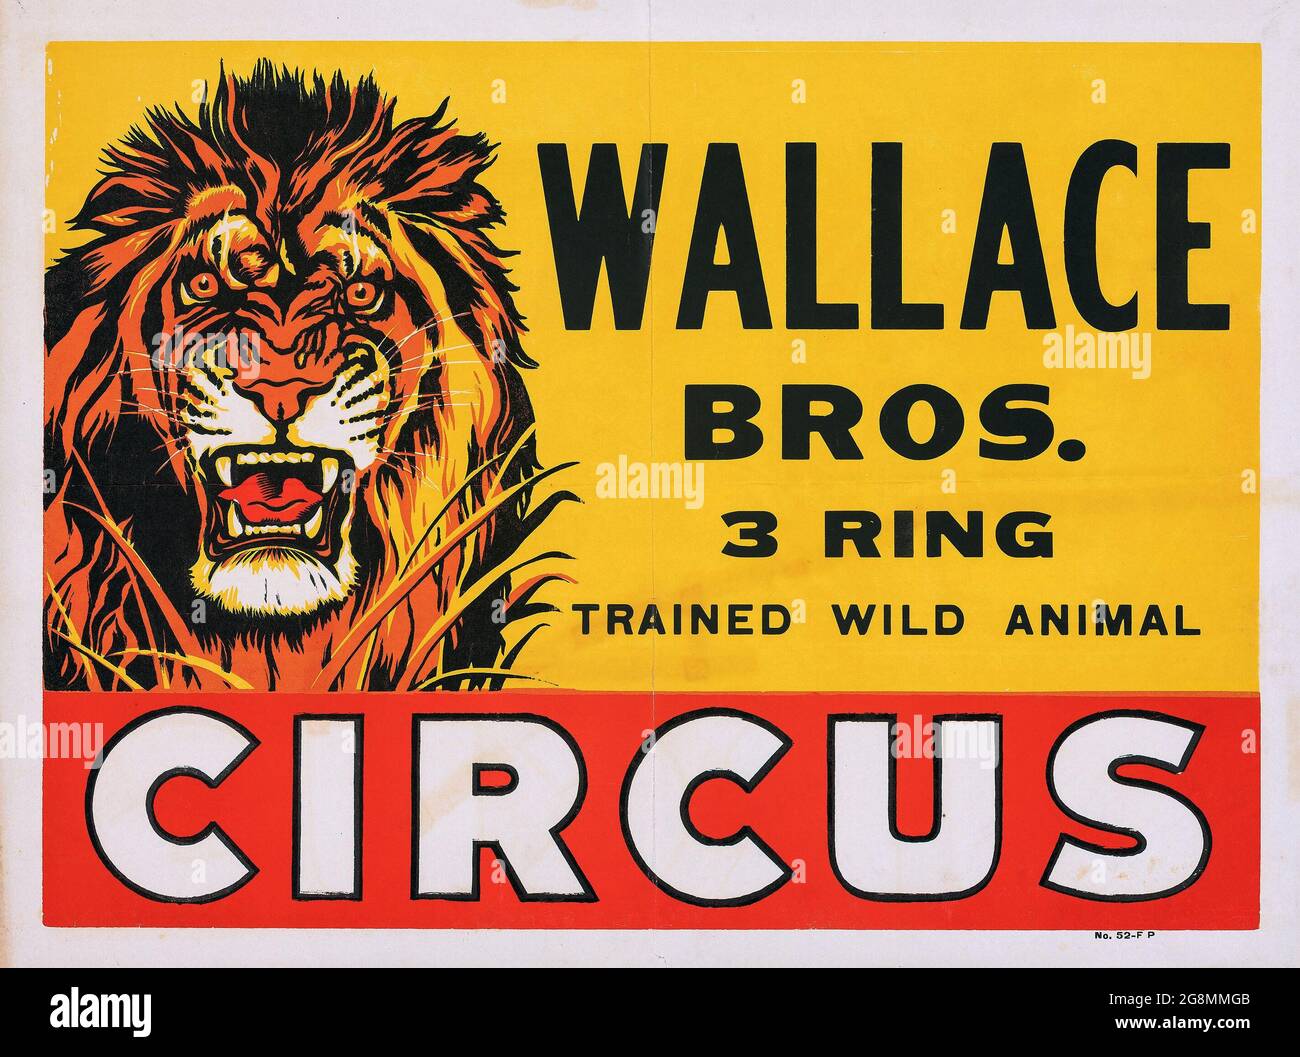 Wallace Brothers Circus Poster (années 1950). 3 anneau, animal sauvage entraîné Circus. Affiche de cirque vintage. Un grand lion rugissant. Banque D'Images